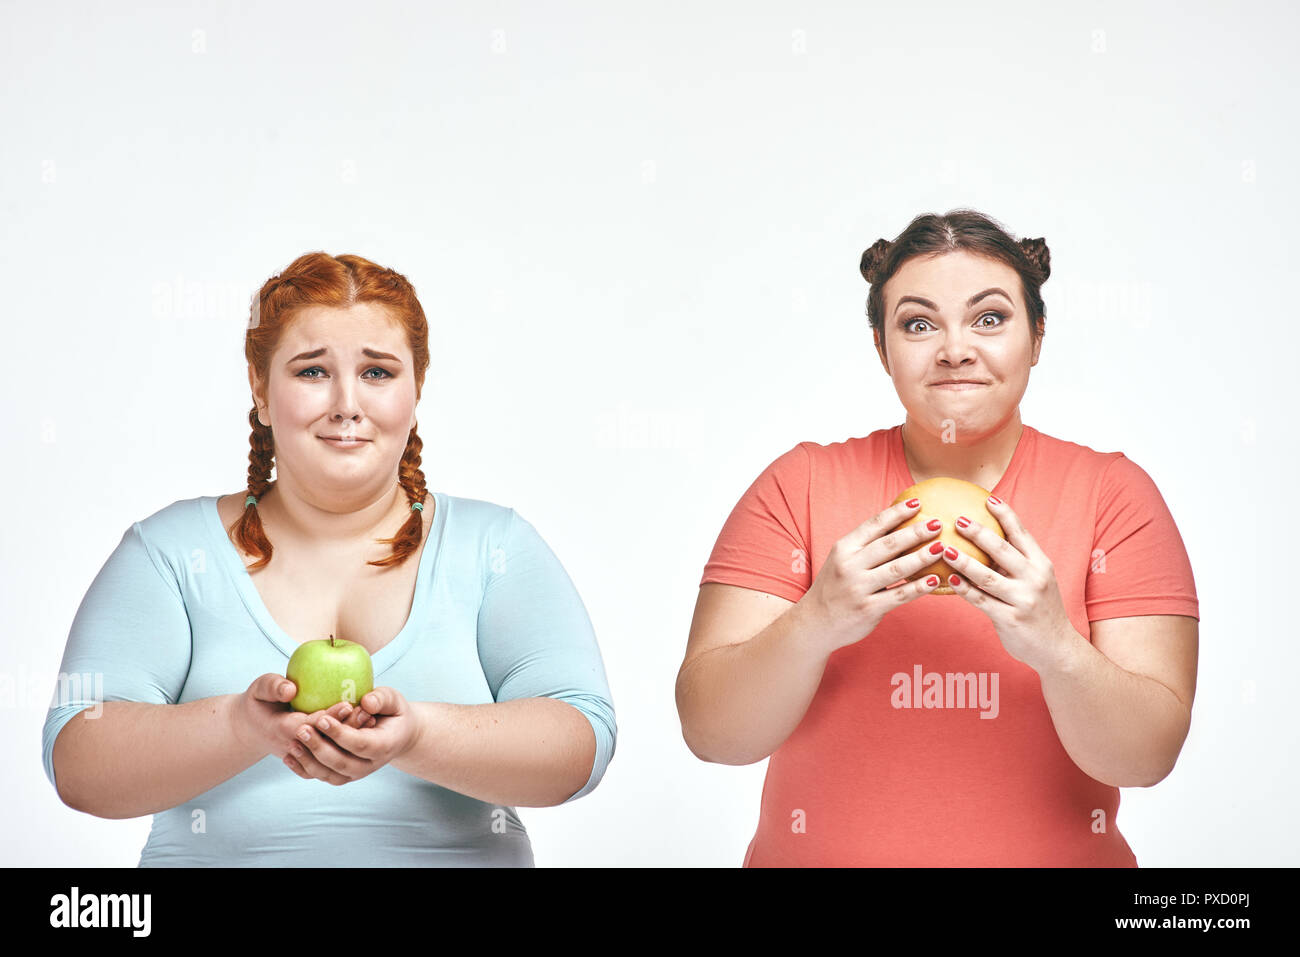 Divertente immagine di divertenti chubby donne su sfondo bianco. Una donna tenendo un sandwich, l'altra azienda un apple. Foto Stock